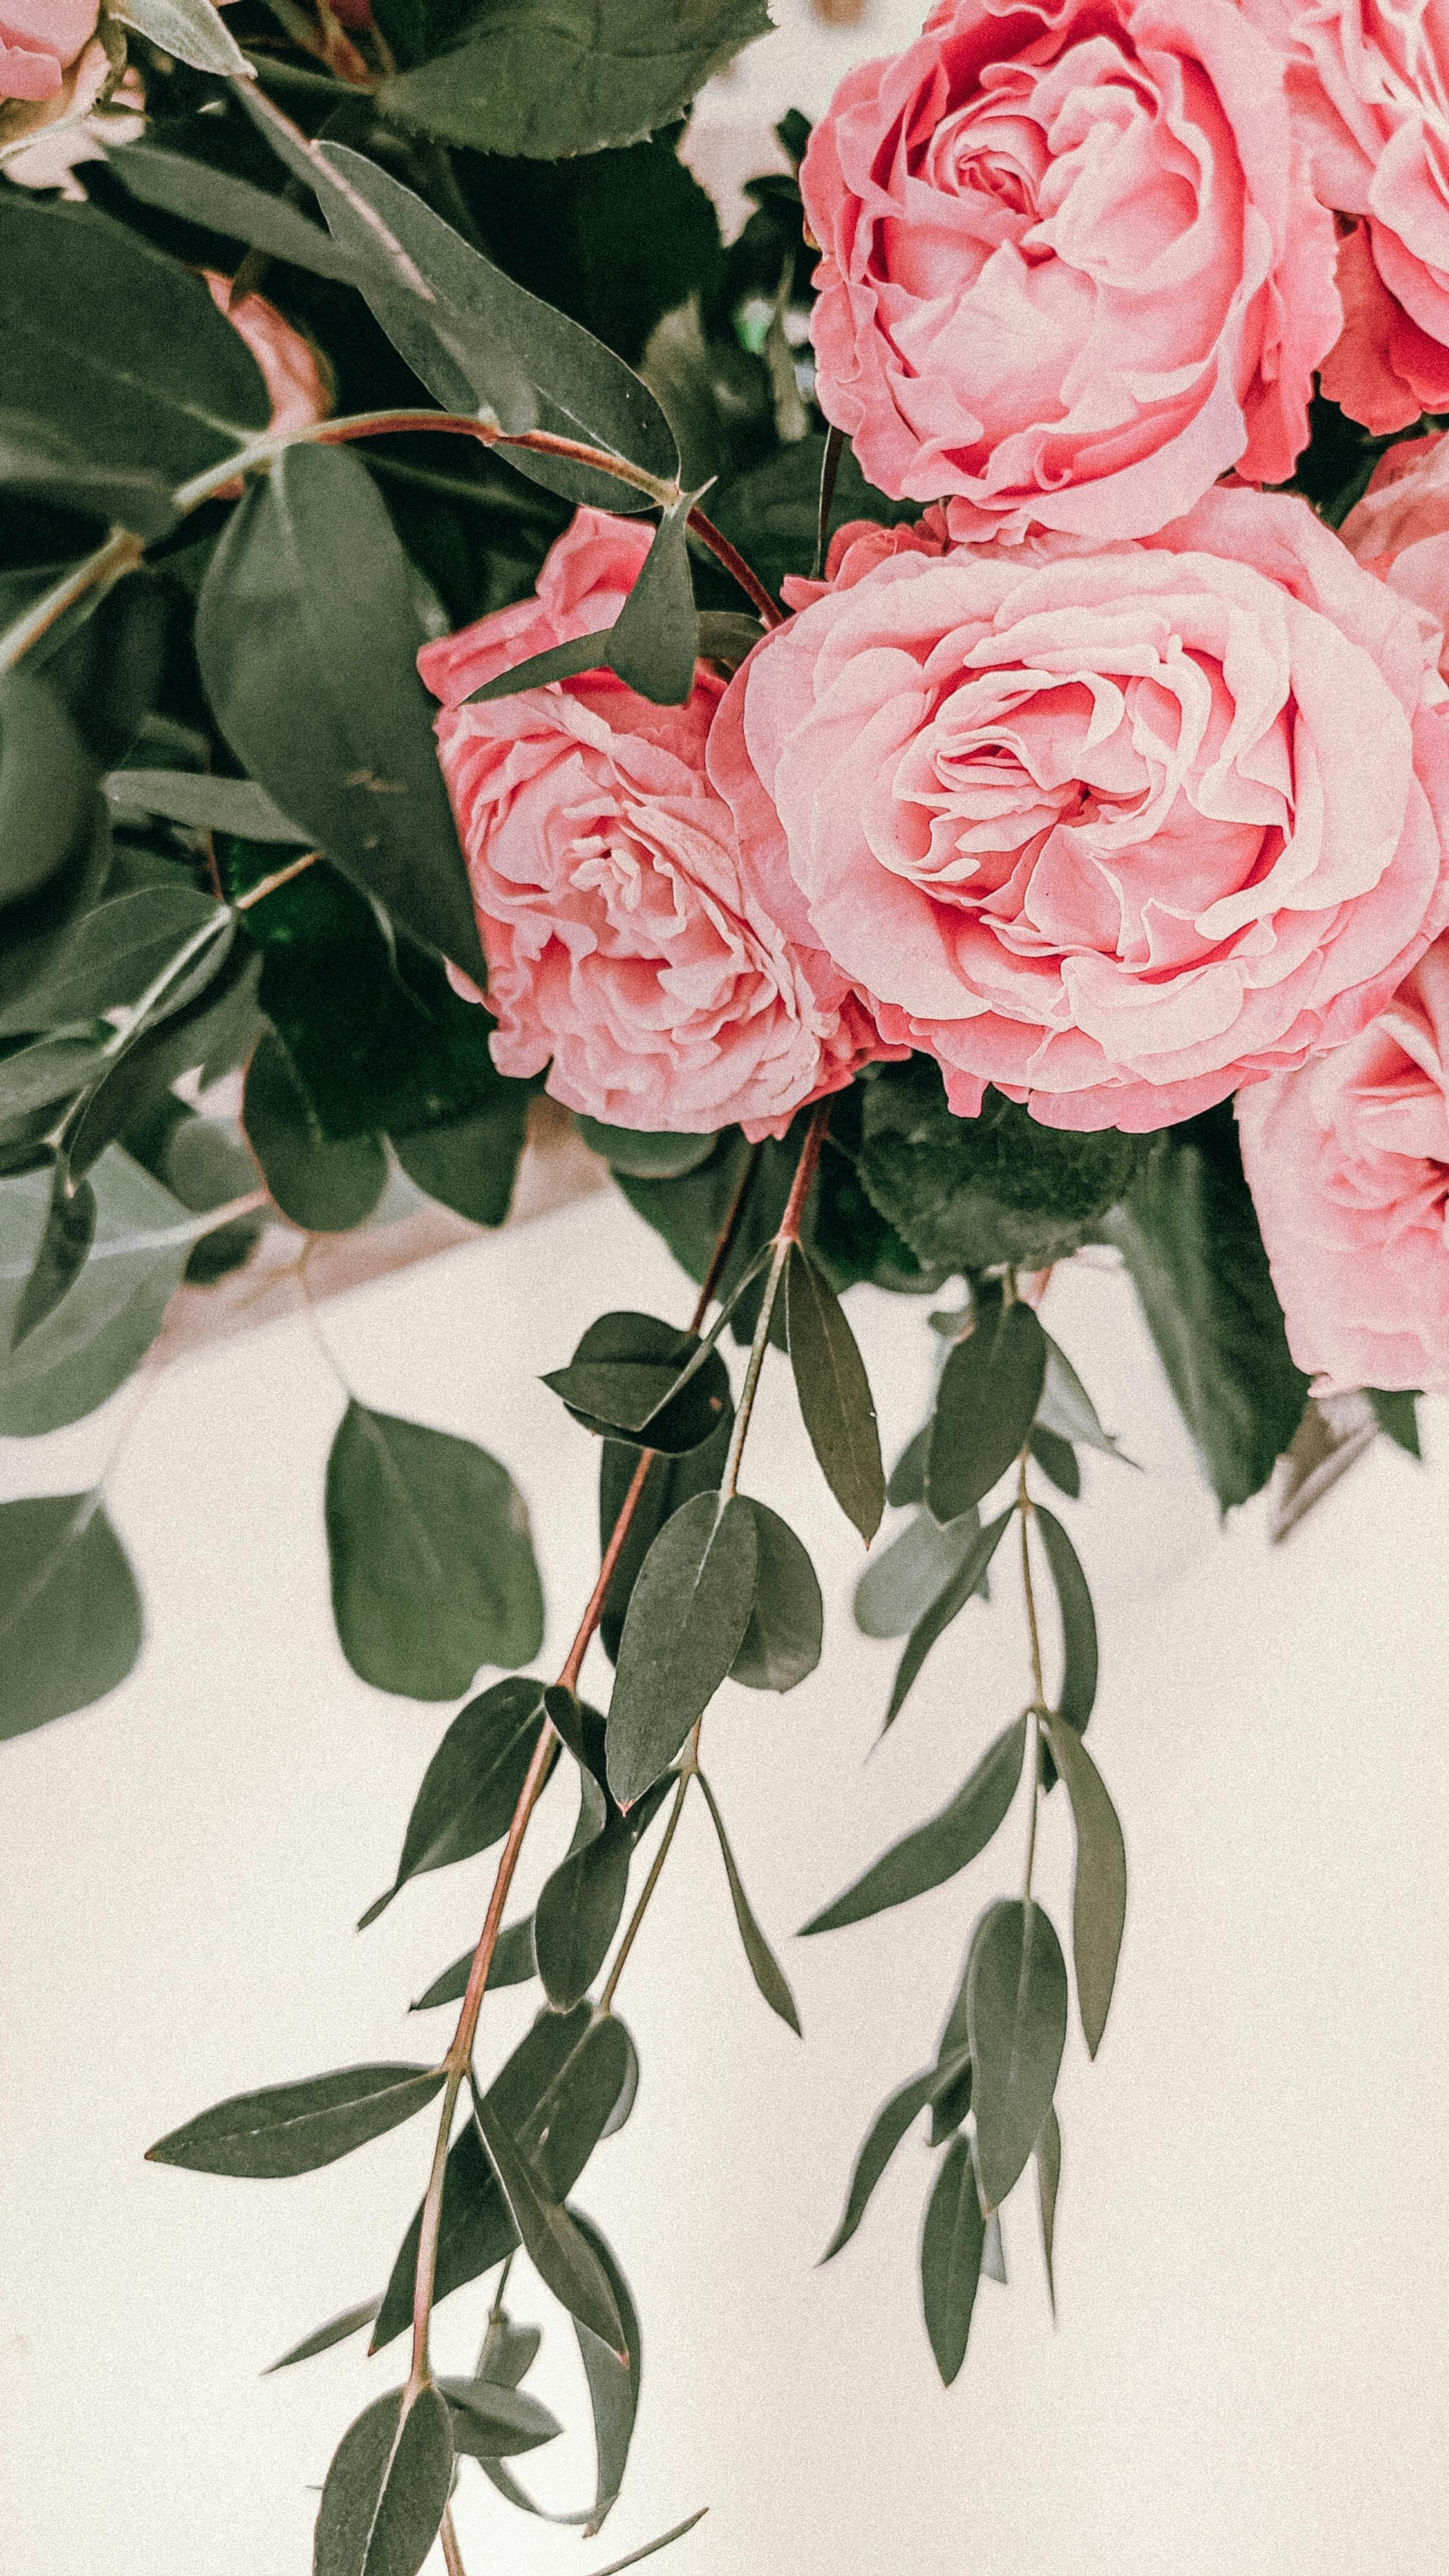 Với màu hồng rực rỡ và hương thơm quyến rũ, hoa hồng màu hồng chắc chắn sẽ khiến bạn bị cuốn hút ngay từ cái nhìn đầu tiên. Hãy xem ảnh để cảm nhận vẻ đẹp tuyệt vời của loài hoa quý giá này.